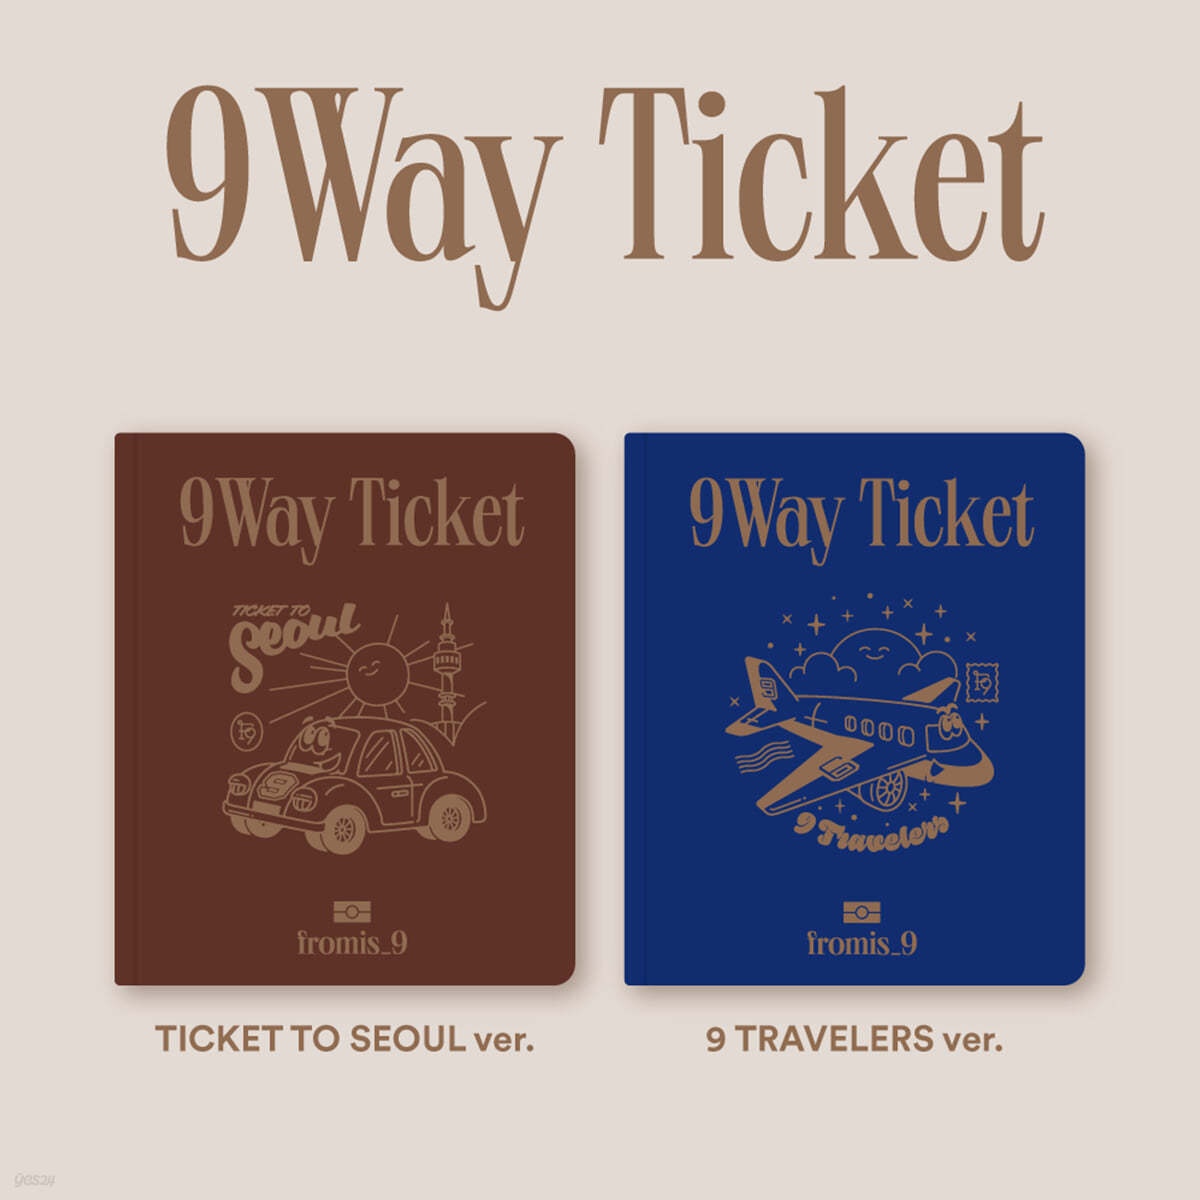 프로미스나인 (fromis_9) - 9 Way Ticket [SET]